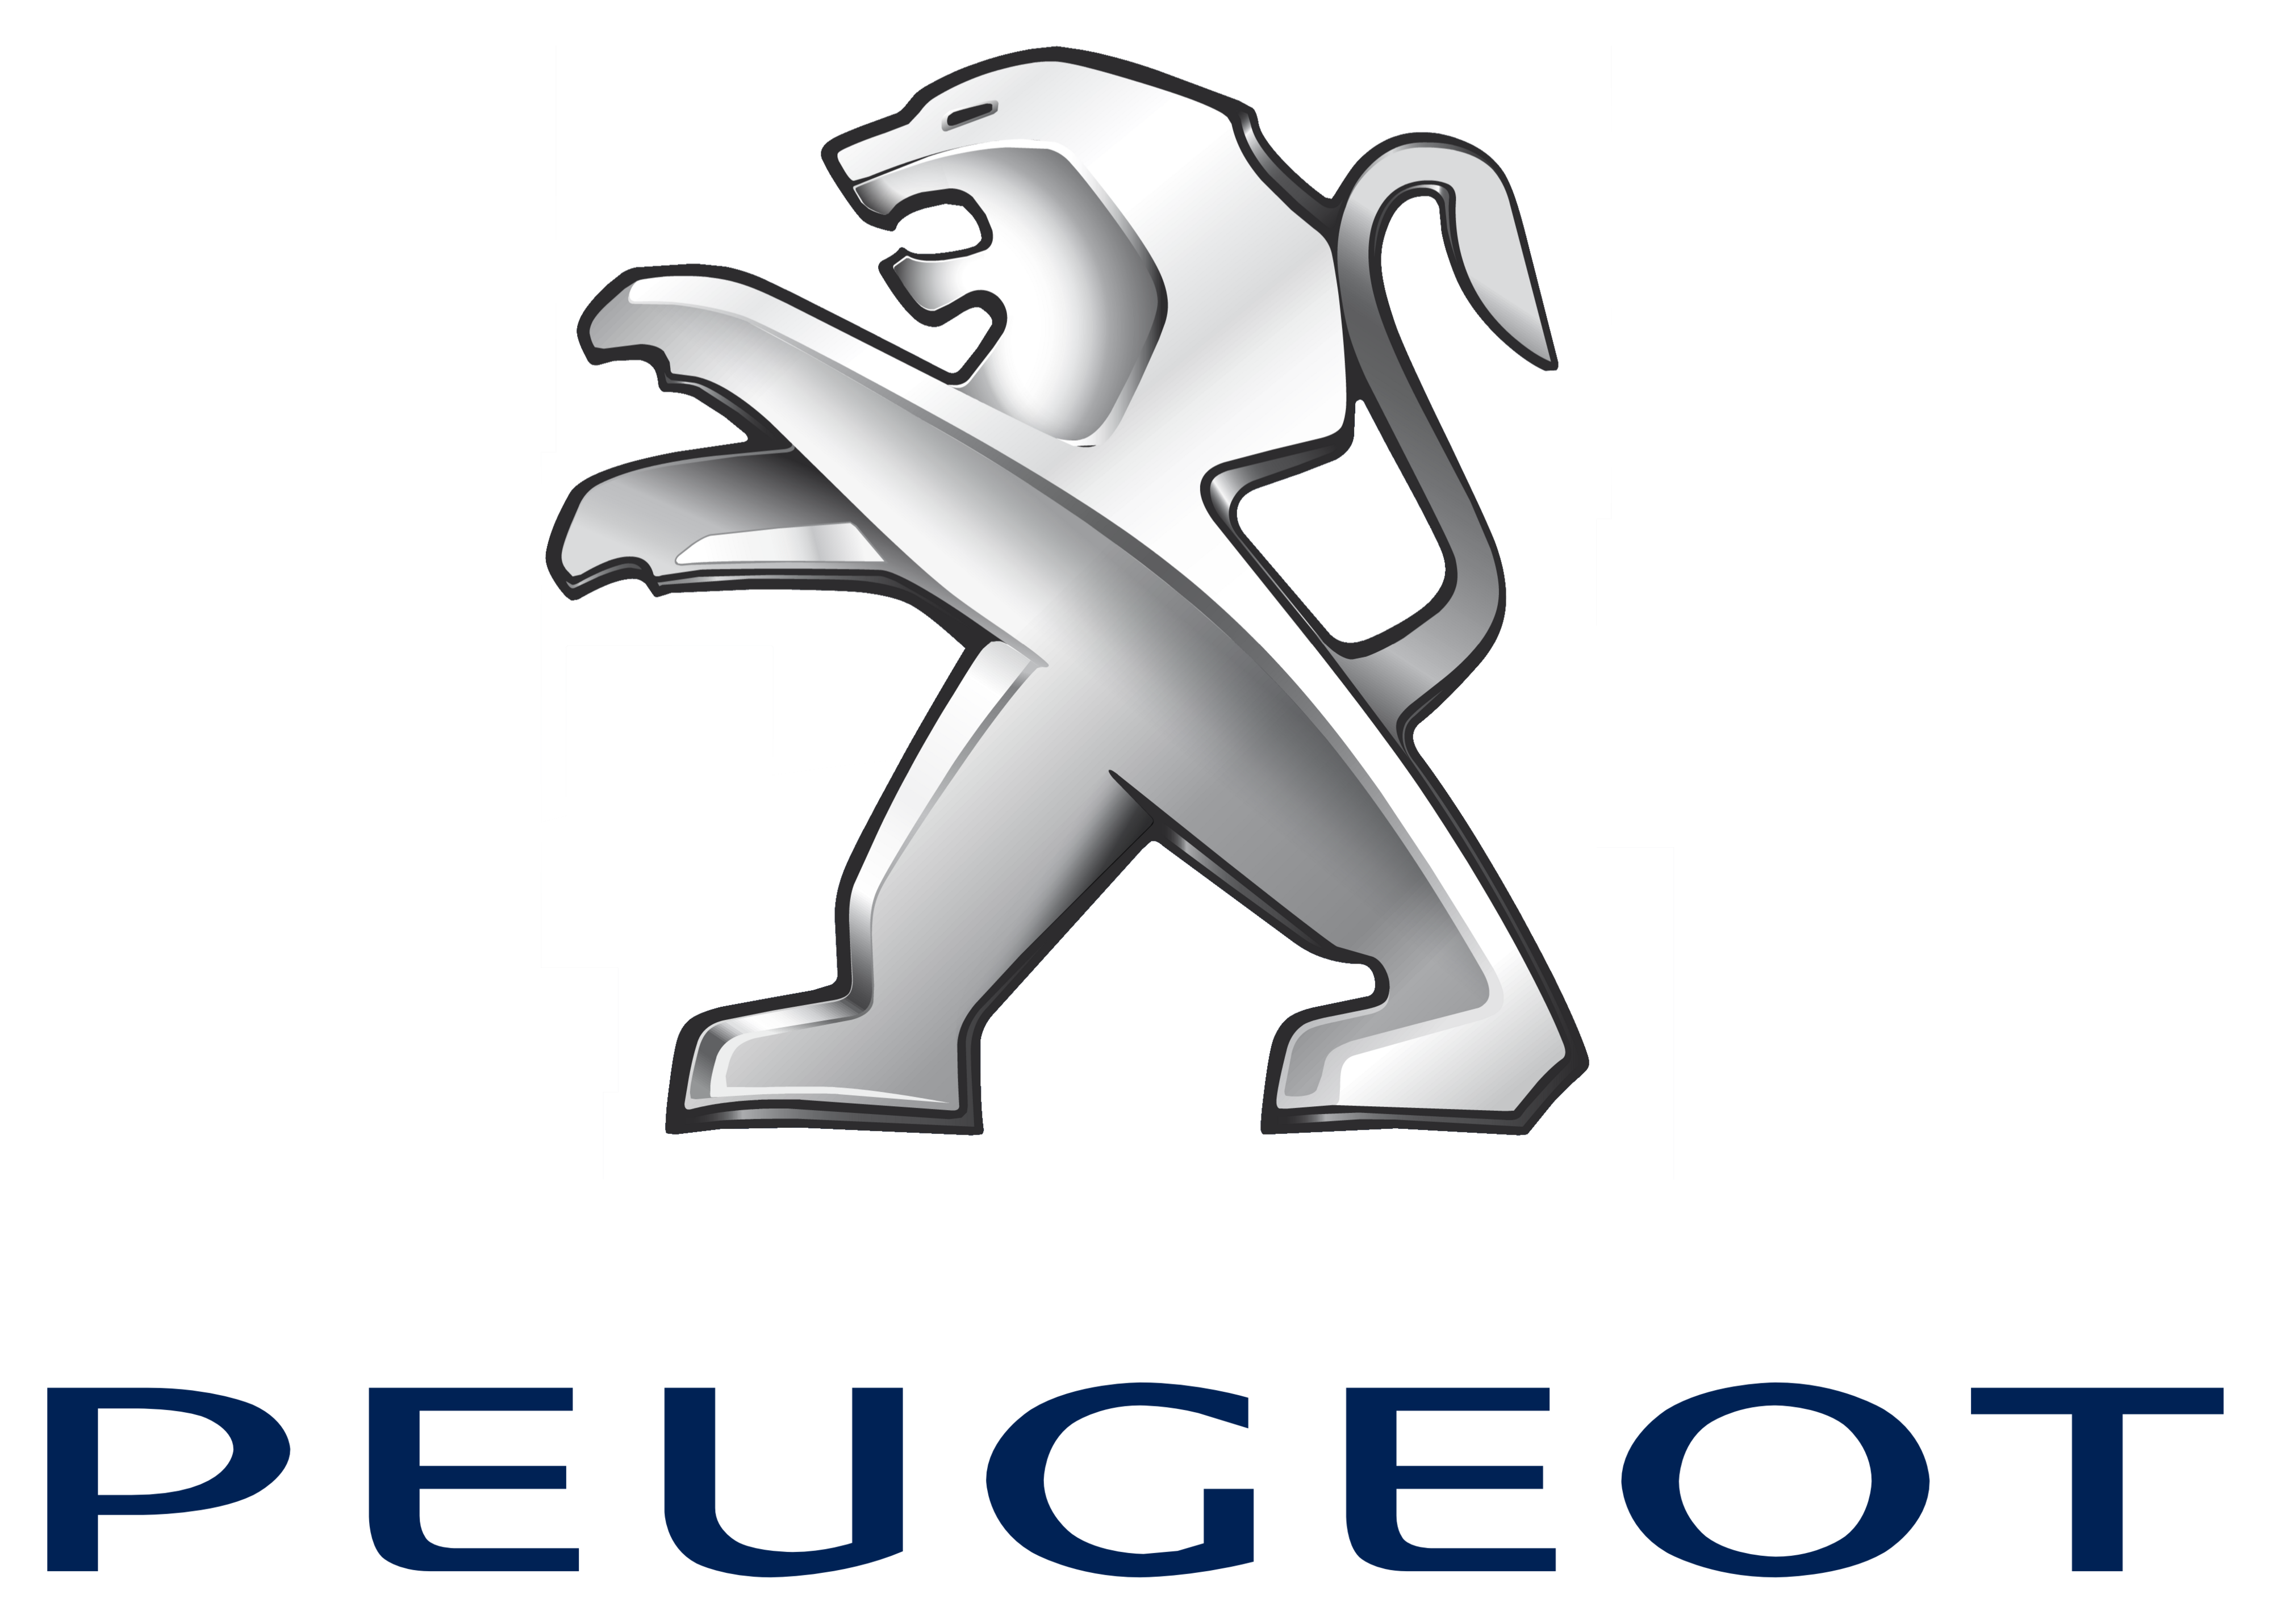 Peugeot-tygmärken